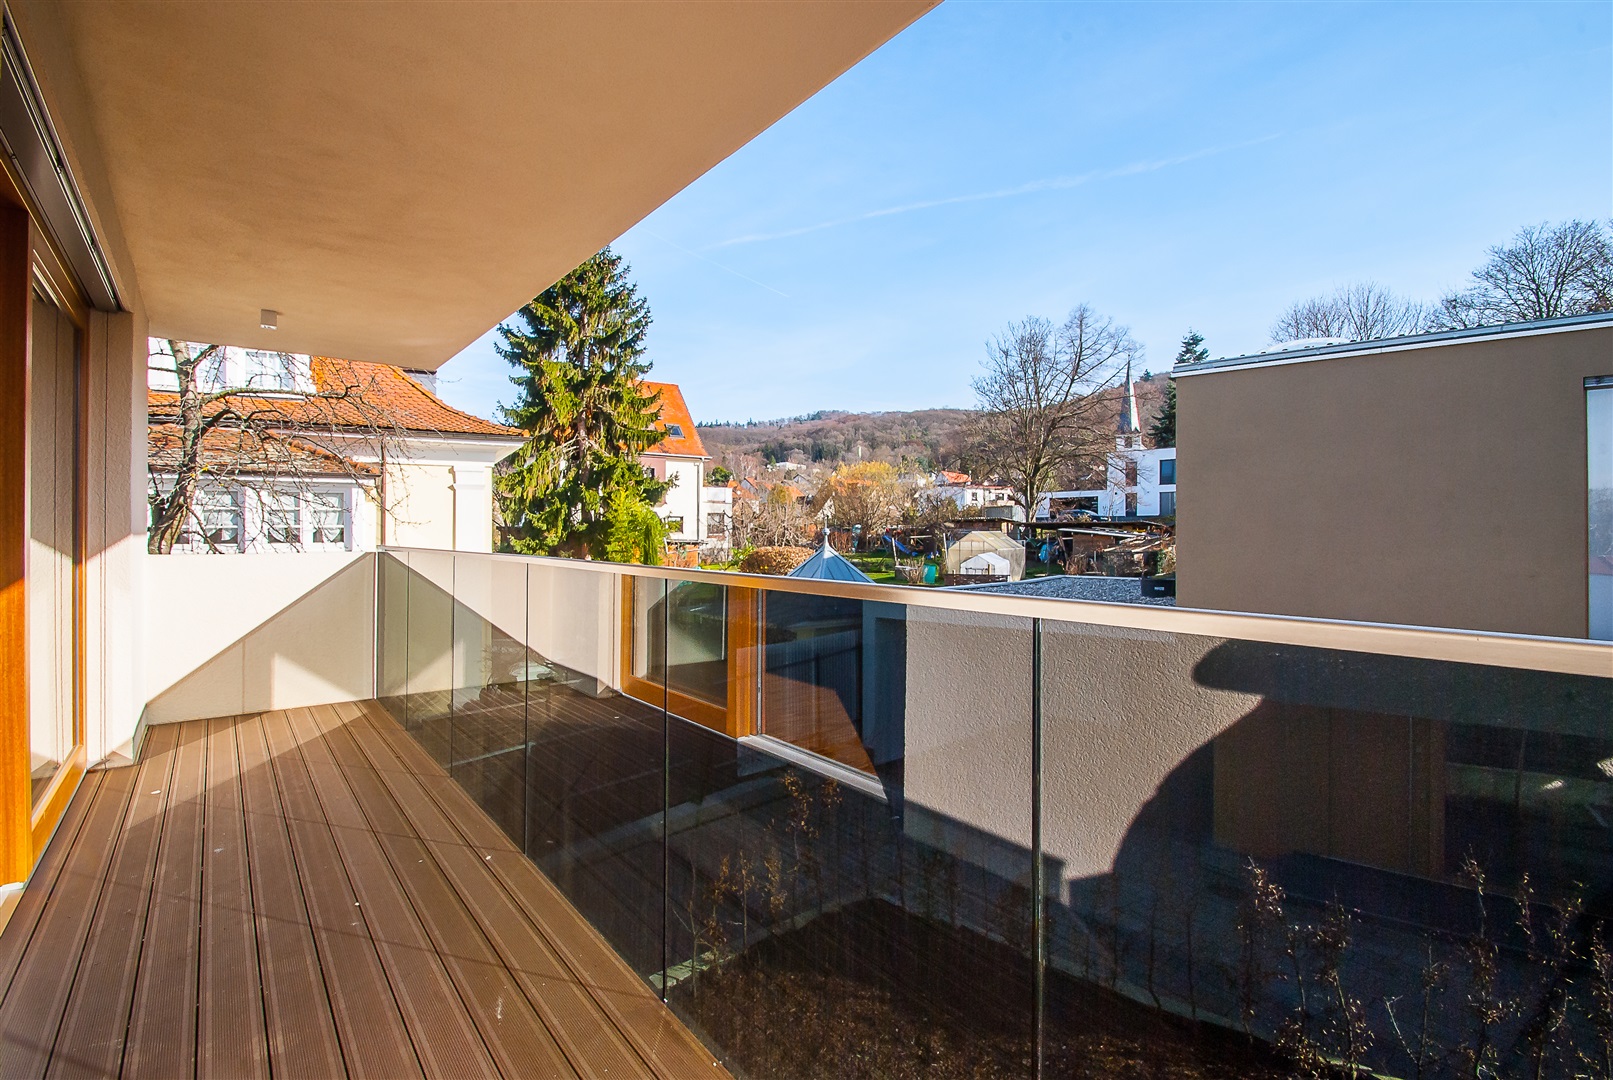 Balkon der Elternsuite. Dielen in Holz-Optik auf dem Balkon mit Fernblick. - Oliver Reifferscheid - Immobilienmakler Darmstadt